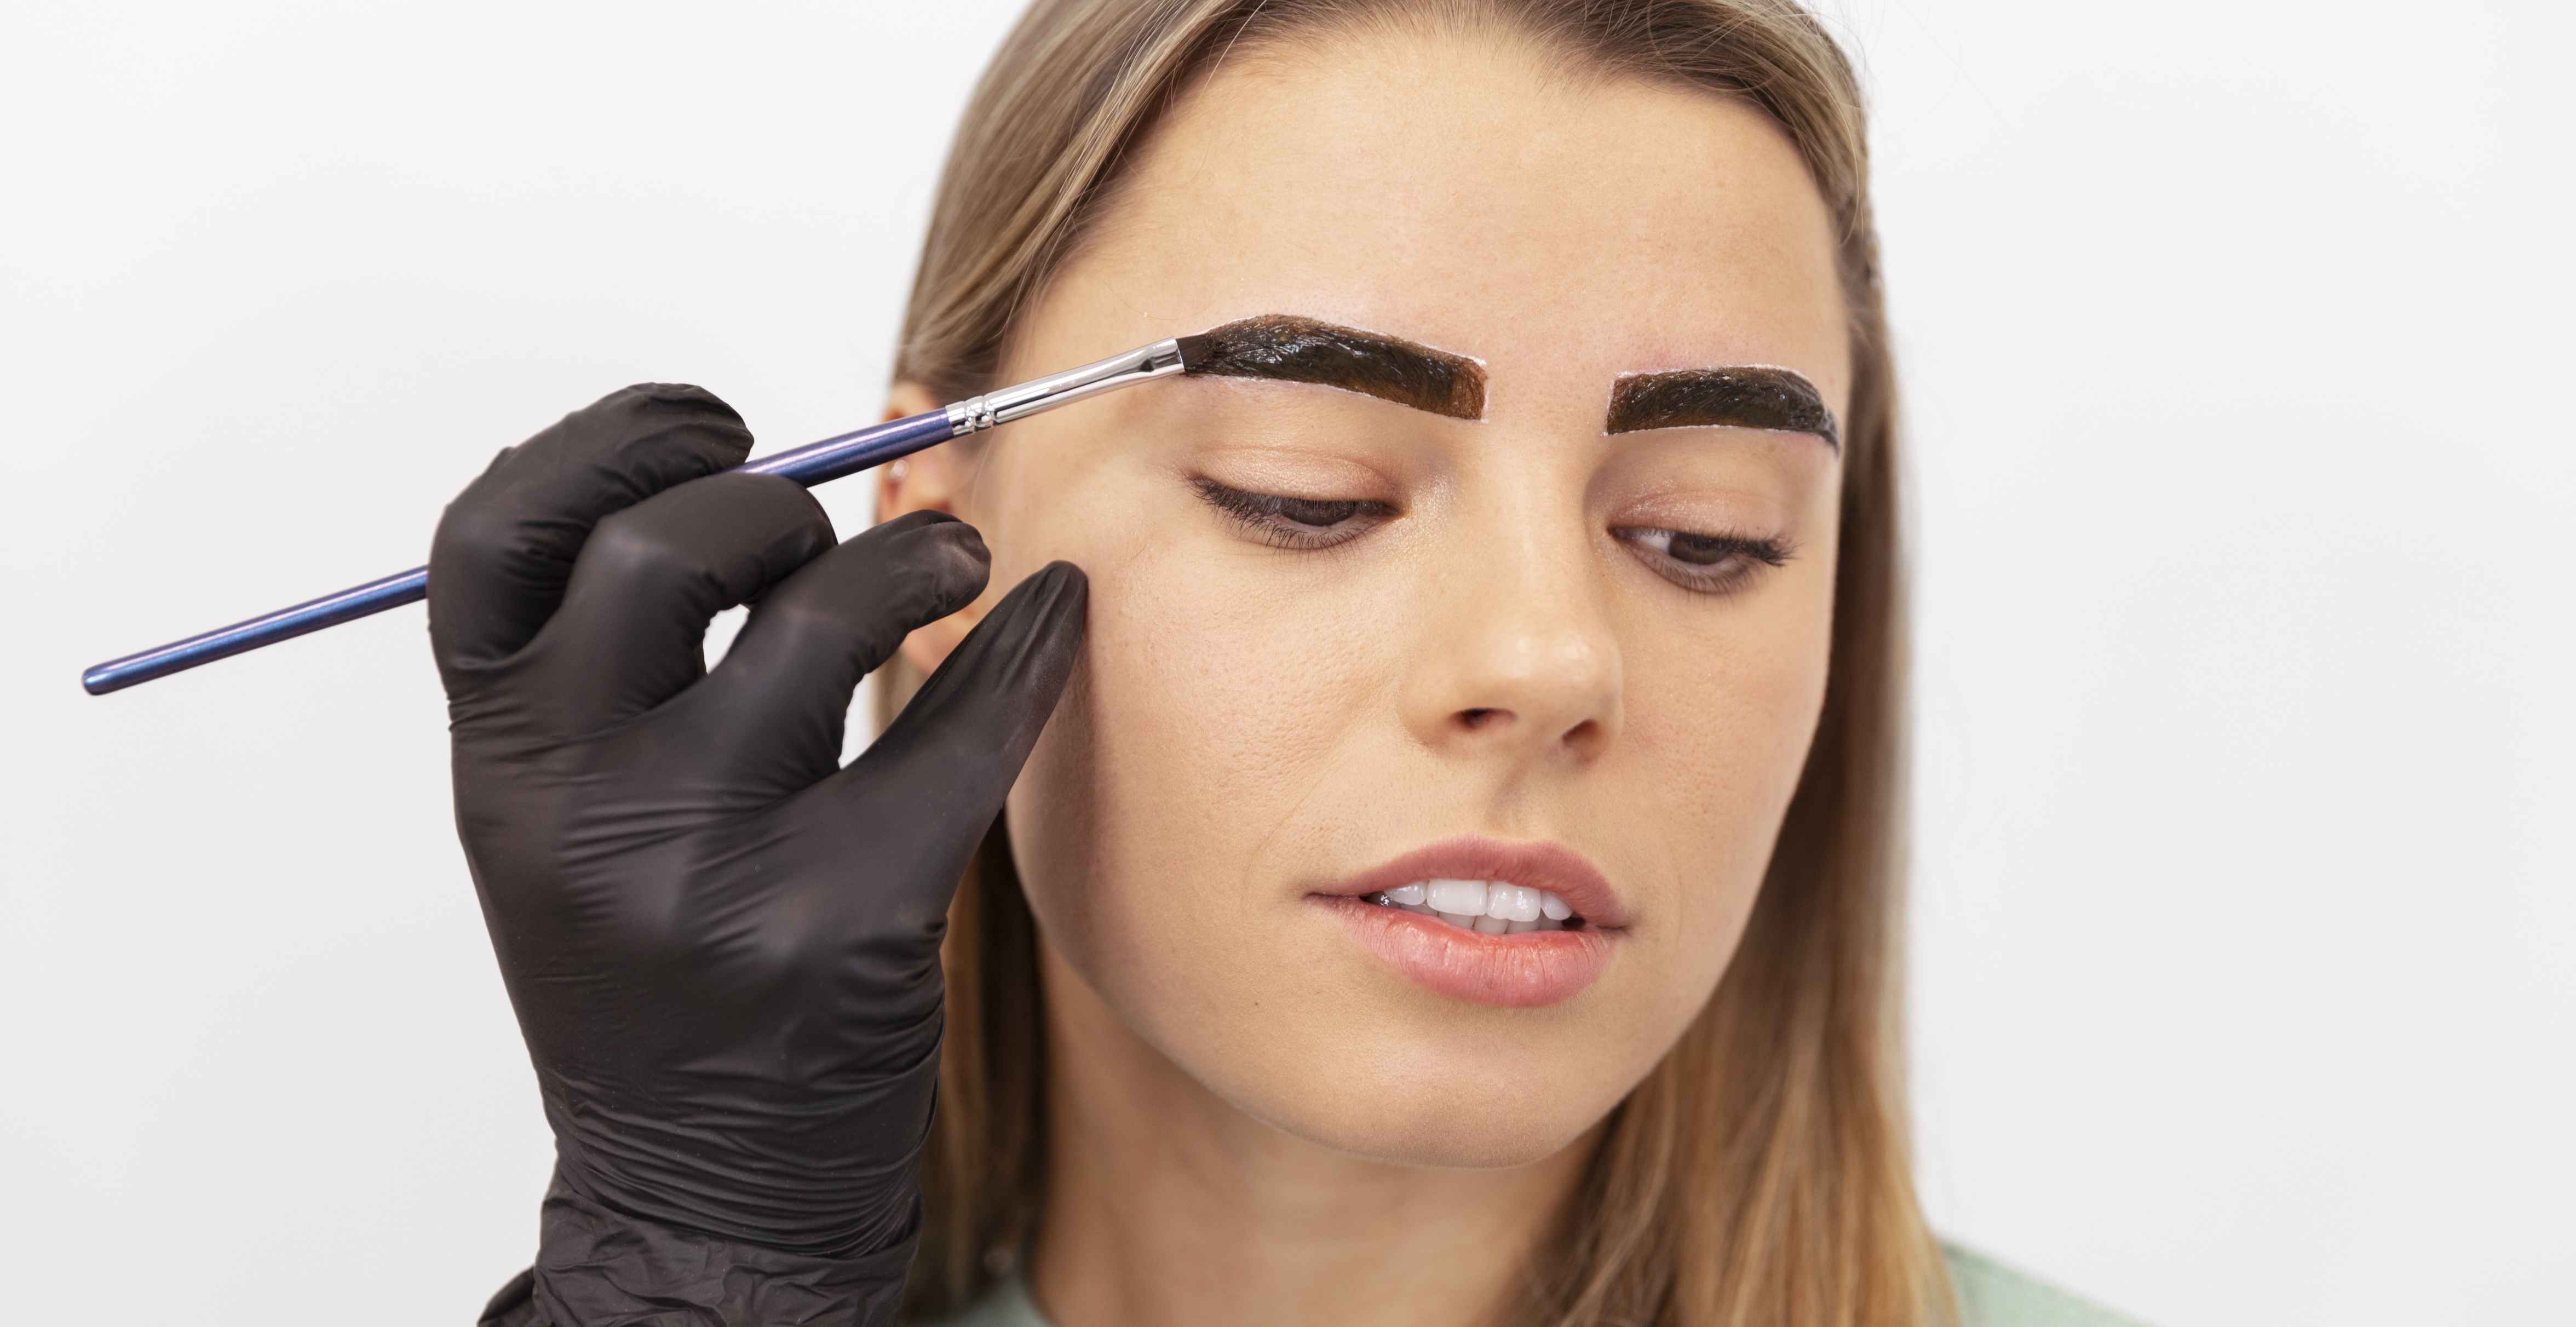 Can eyebrow tinting replace permanent makeup?